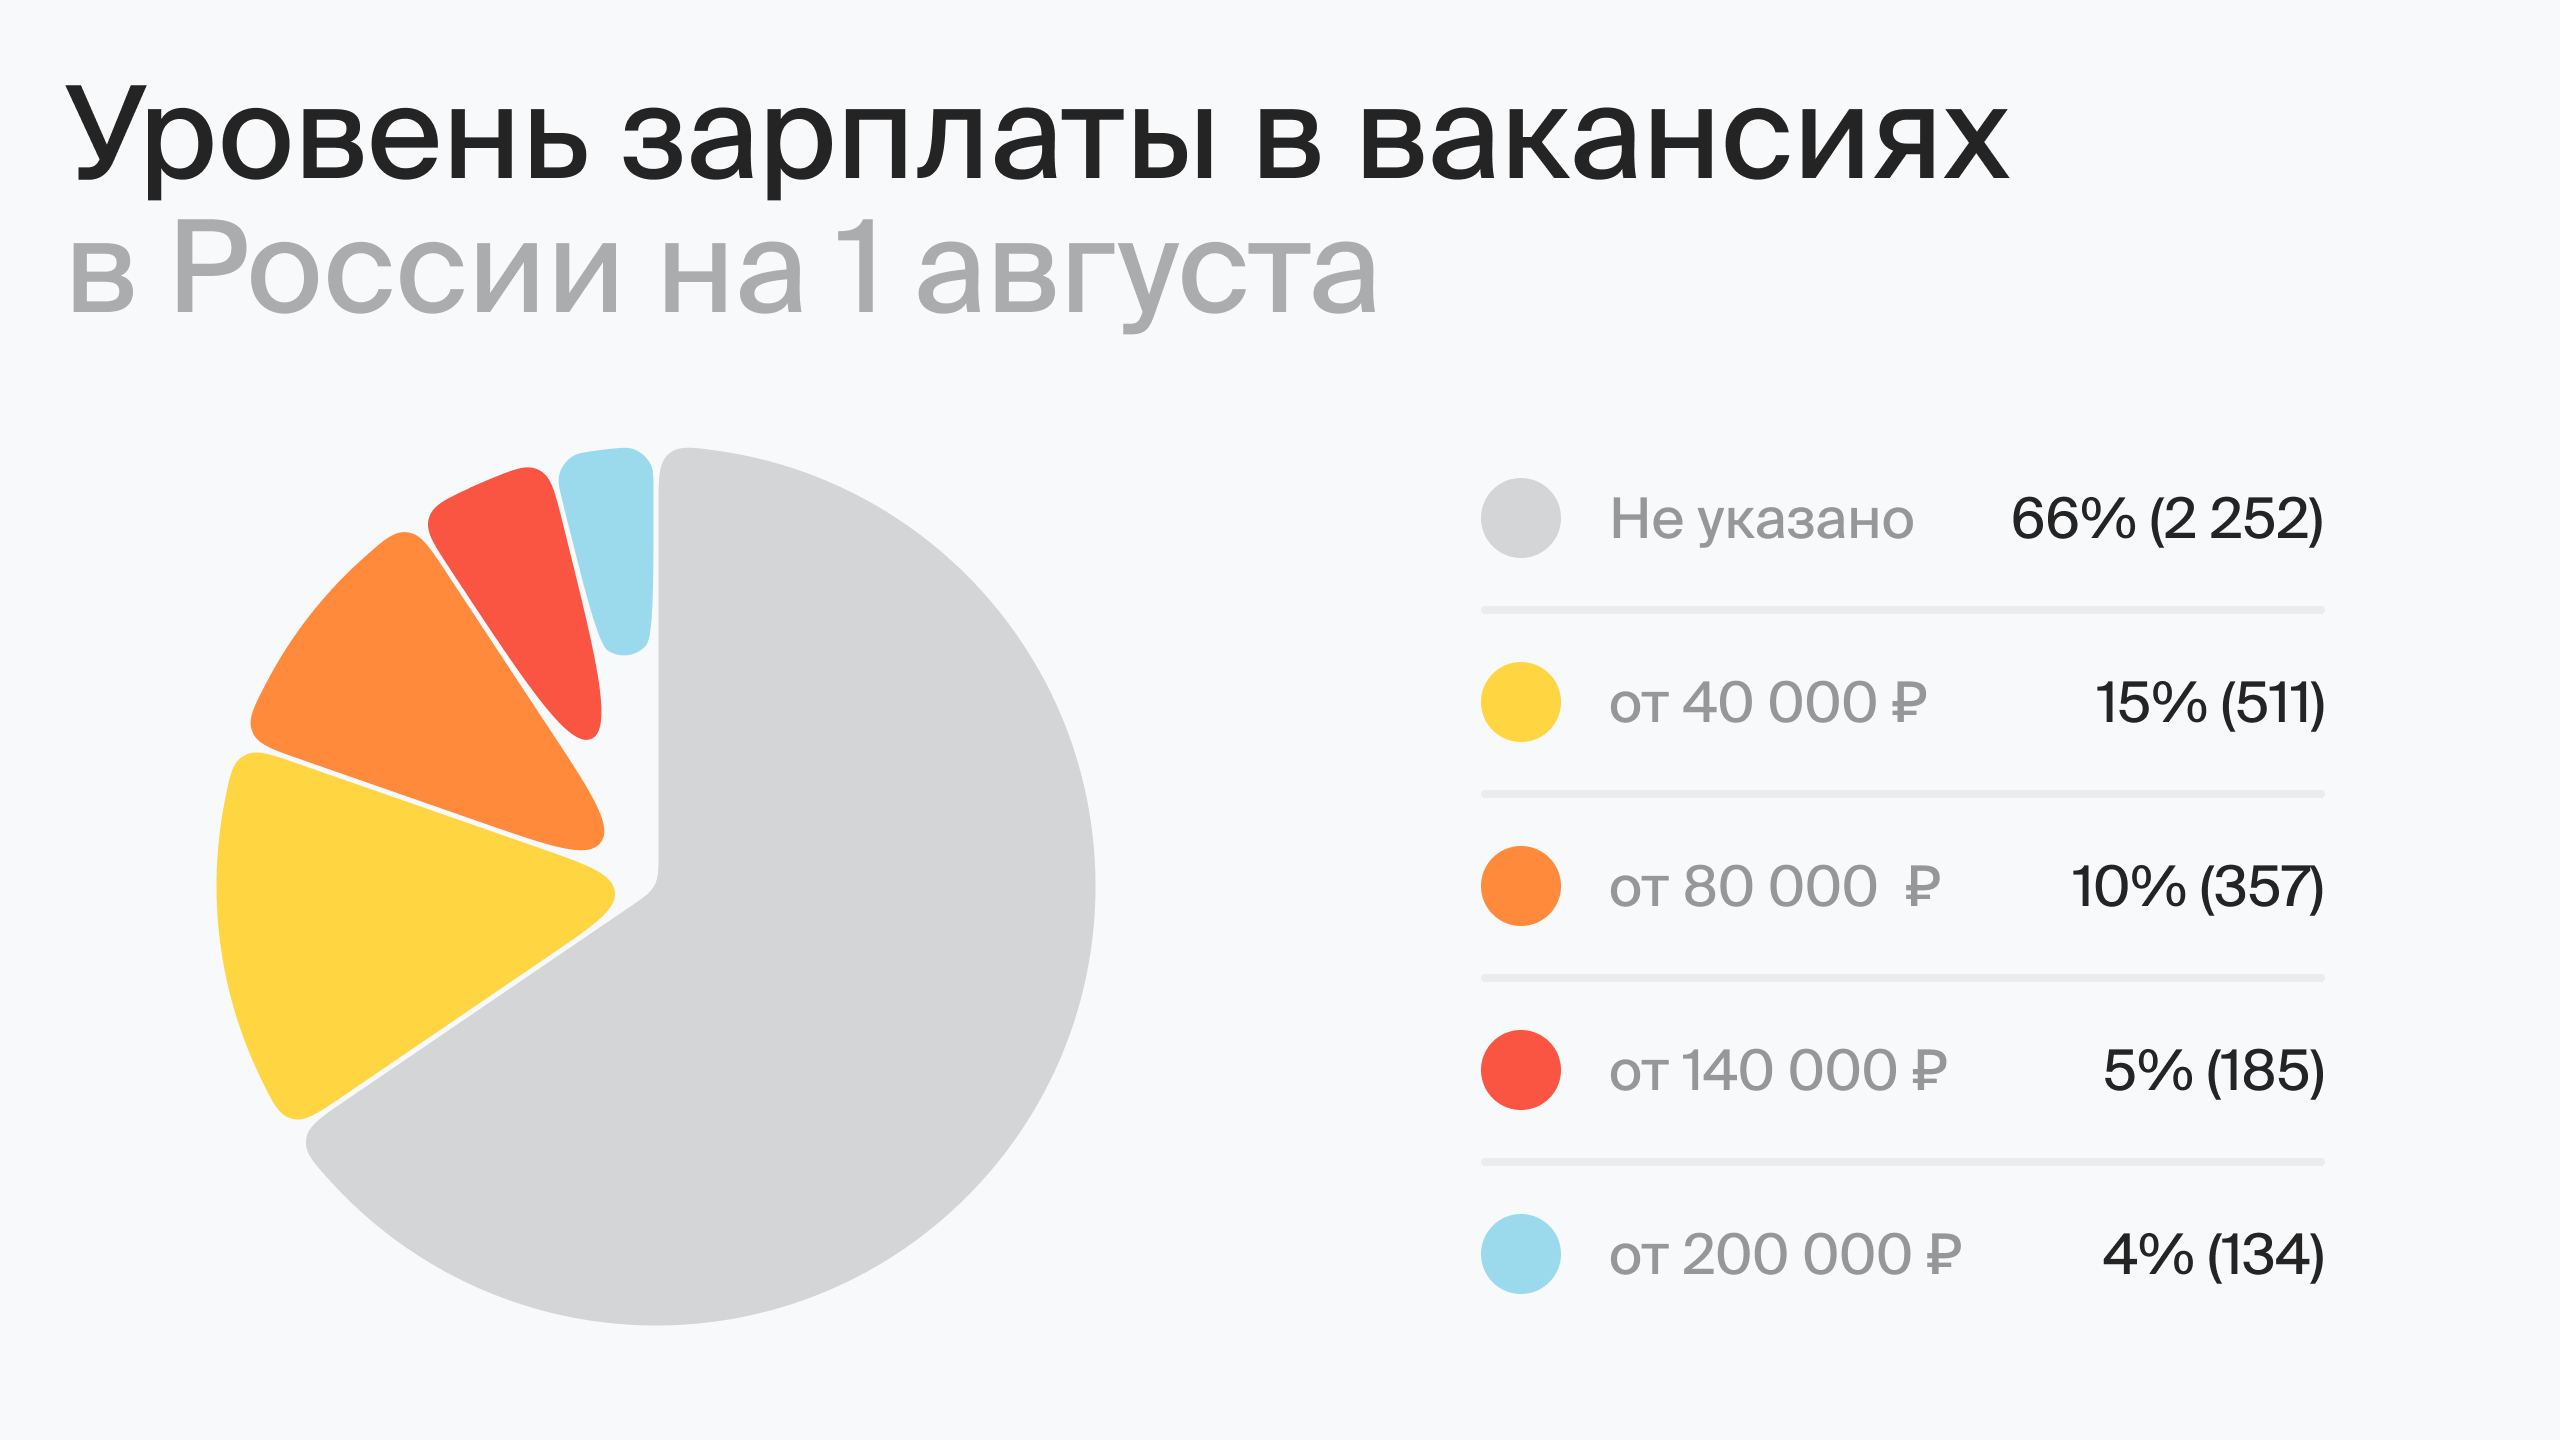 Уровень зарплаты в вакансиях в России на 1 августа (по данным hh.ru)